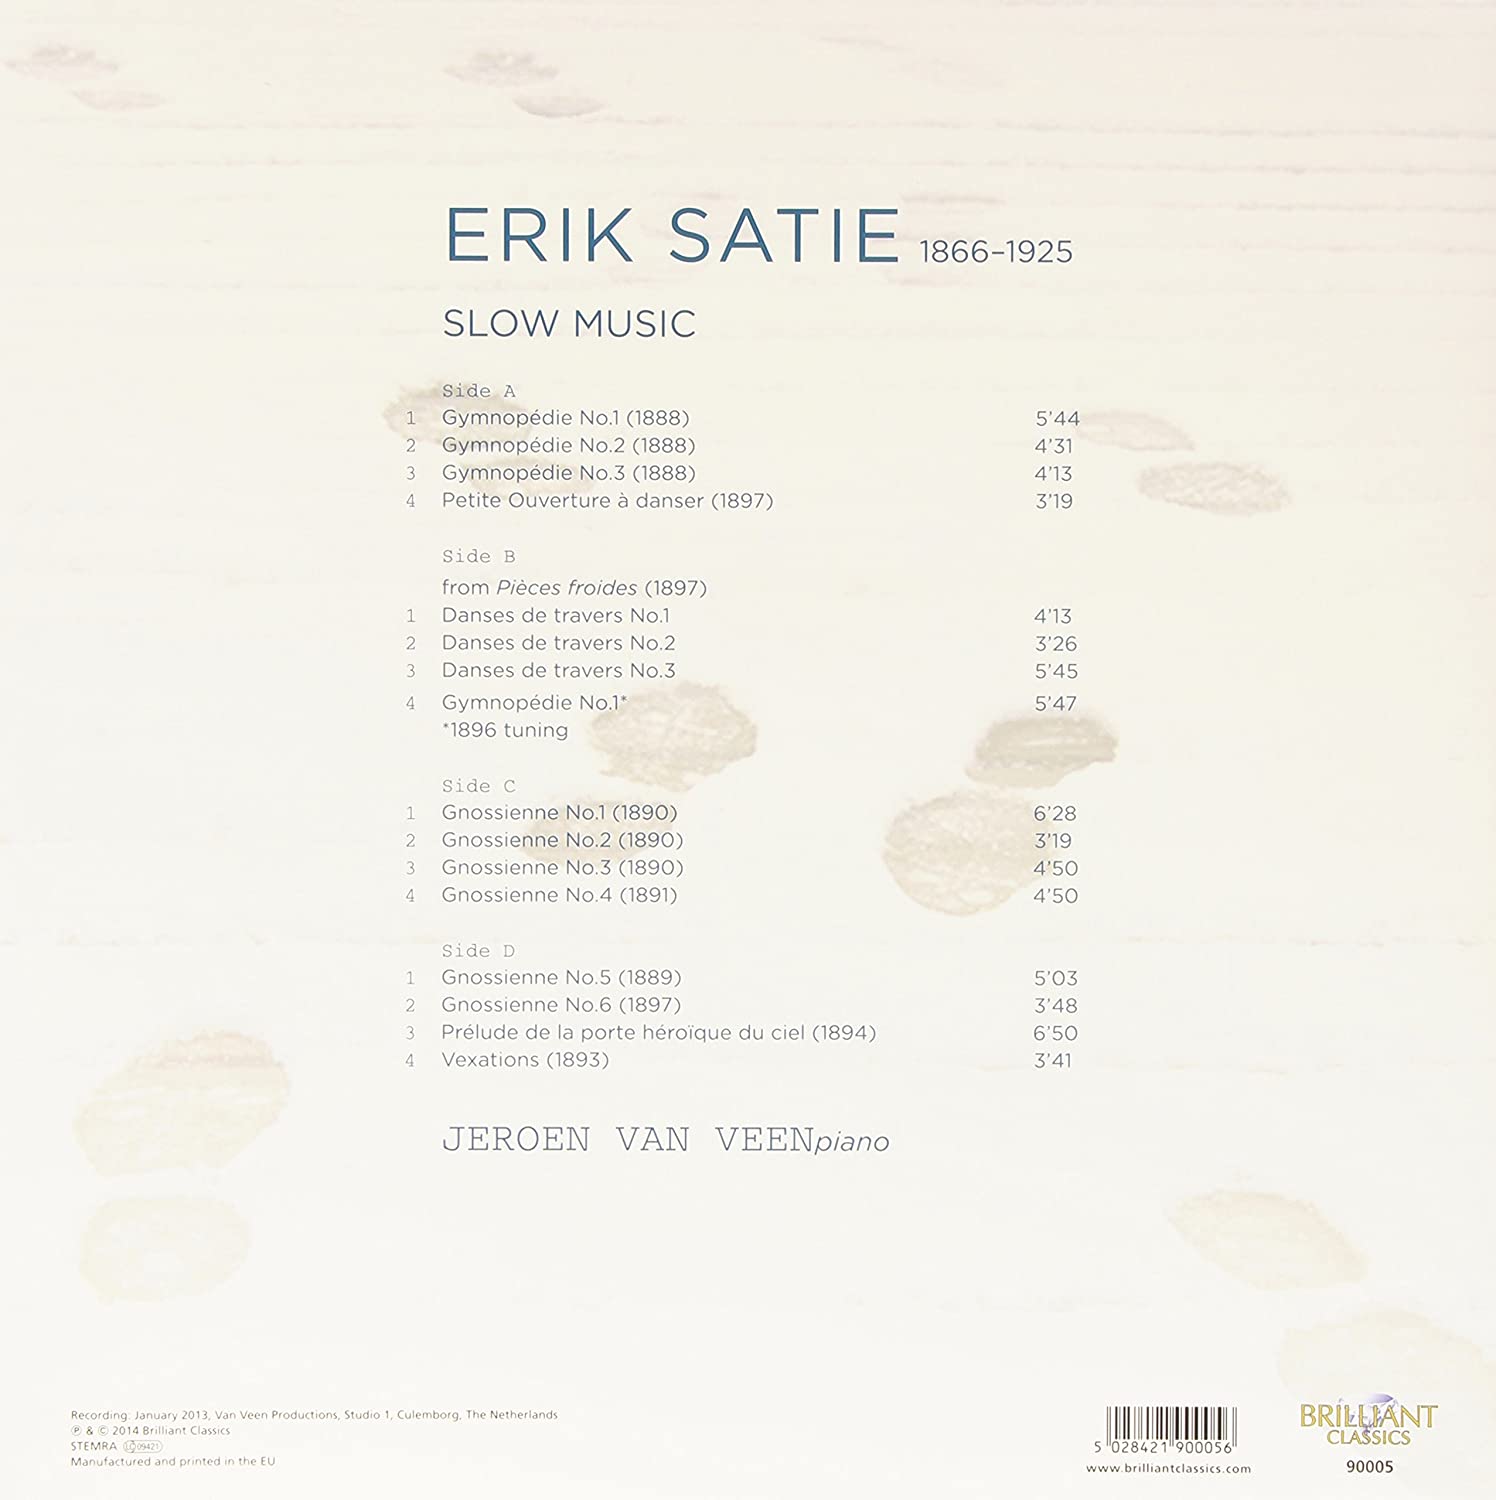 Satie: Slow Music - slide-1